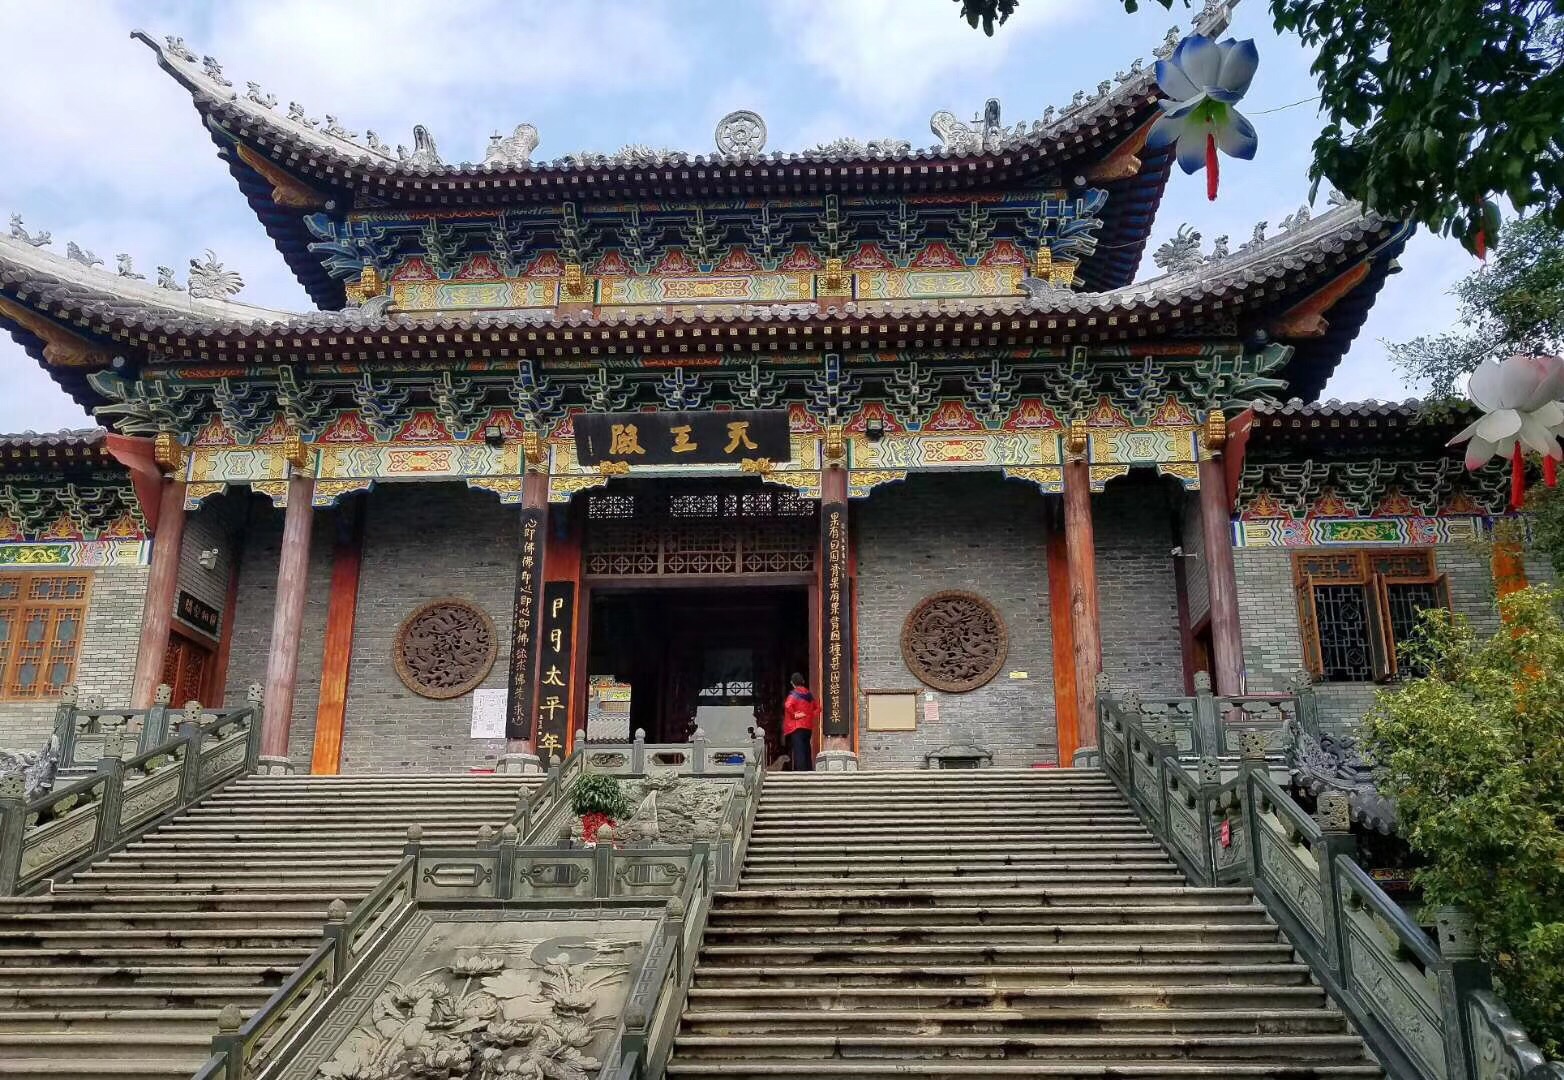 古寺――禅の深みを悟る - 特色のあるテーマ・ツアー – 想像を超えた中国、中国旅行海外向け宣伝サイト